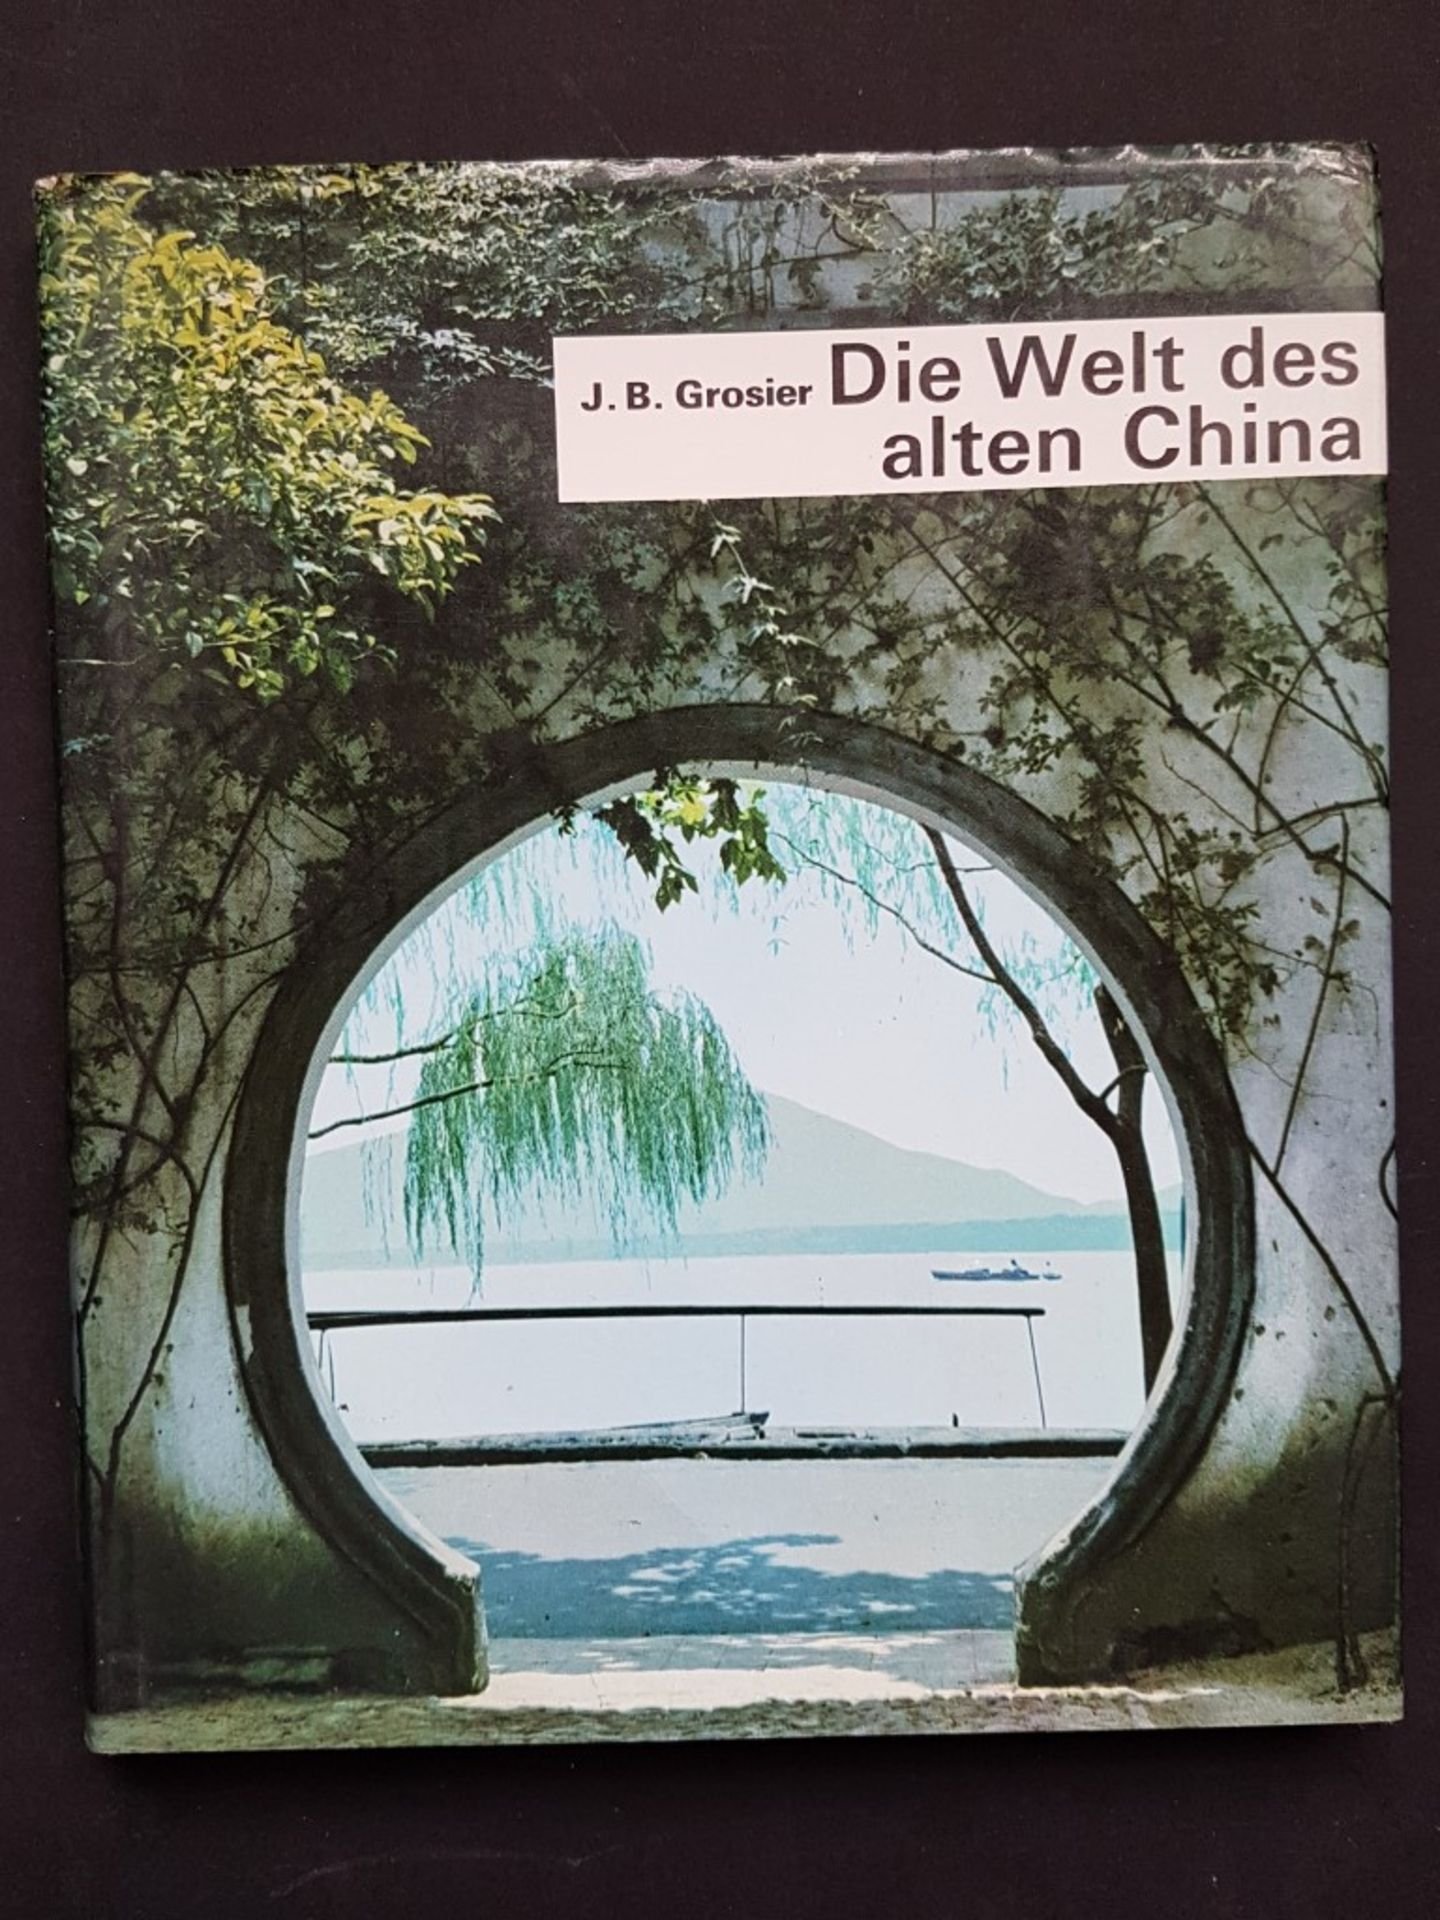 ``Die Welt des alten China``, J.B. Grosier, 1972, mit 141 Seiten